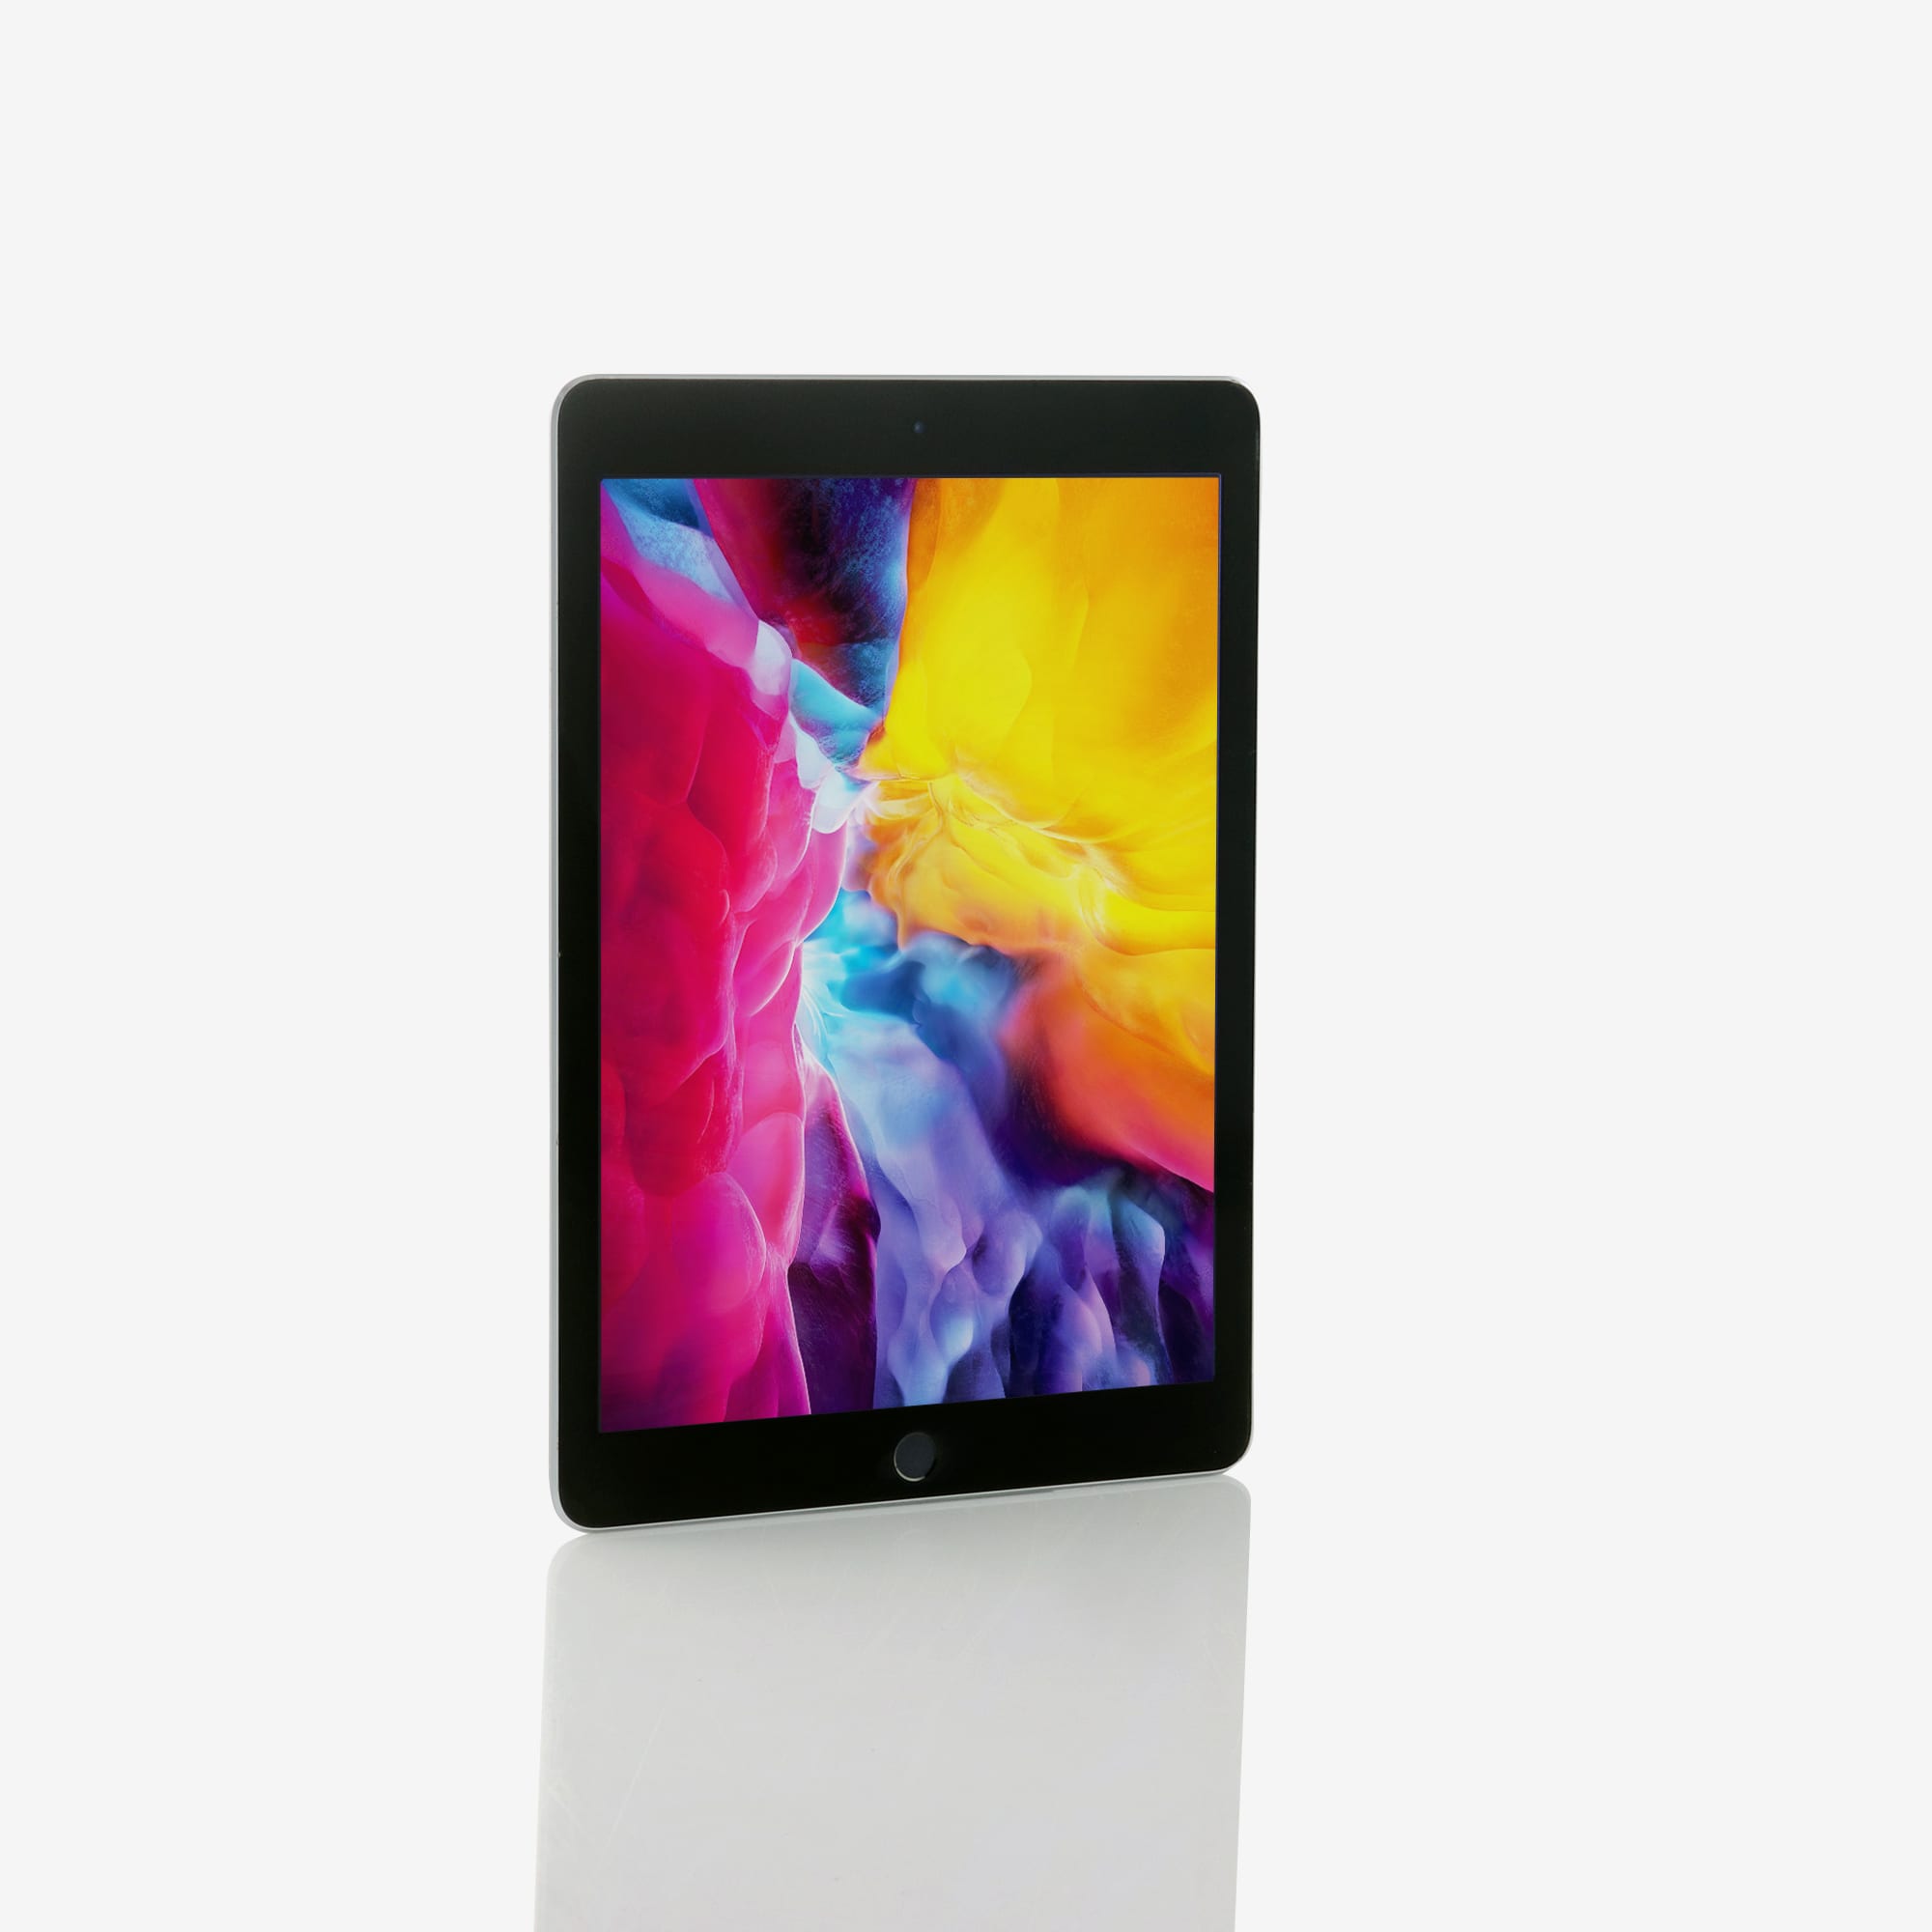 1 x iPad Air 2 (Wi-Fi) Space Grey (2014)